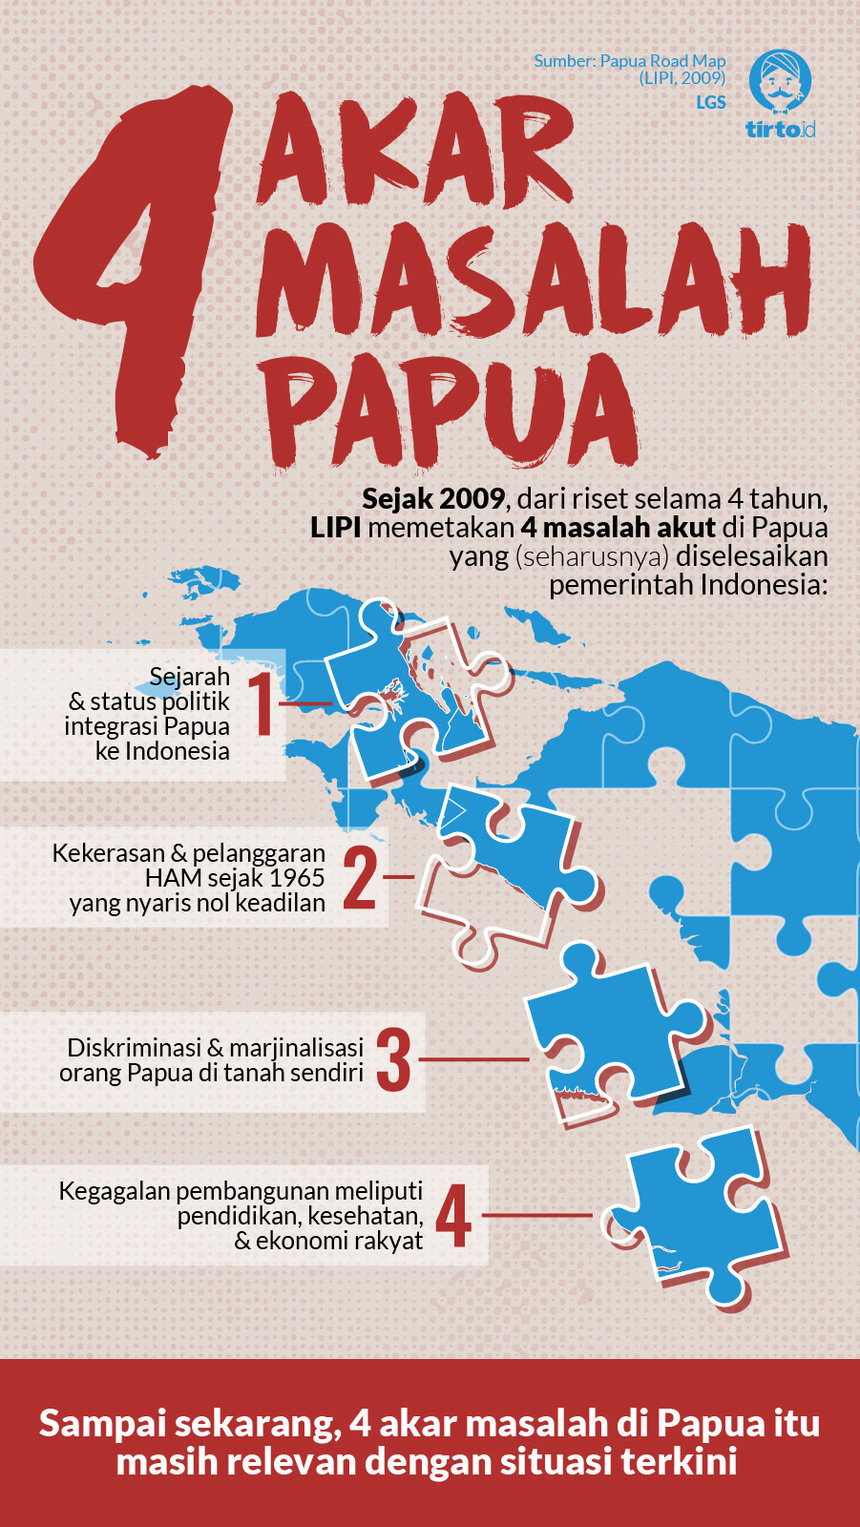 Kasus pelanggaran ham di indonesia yang berkaitan dengan masalah ekonomi adalah kasus